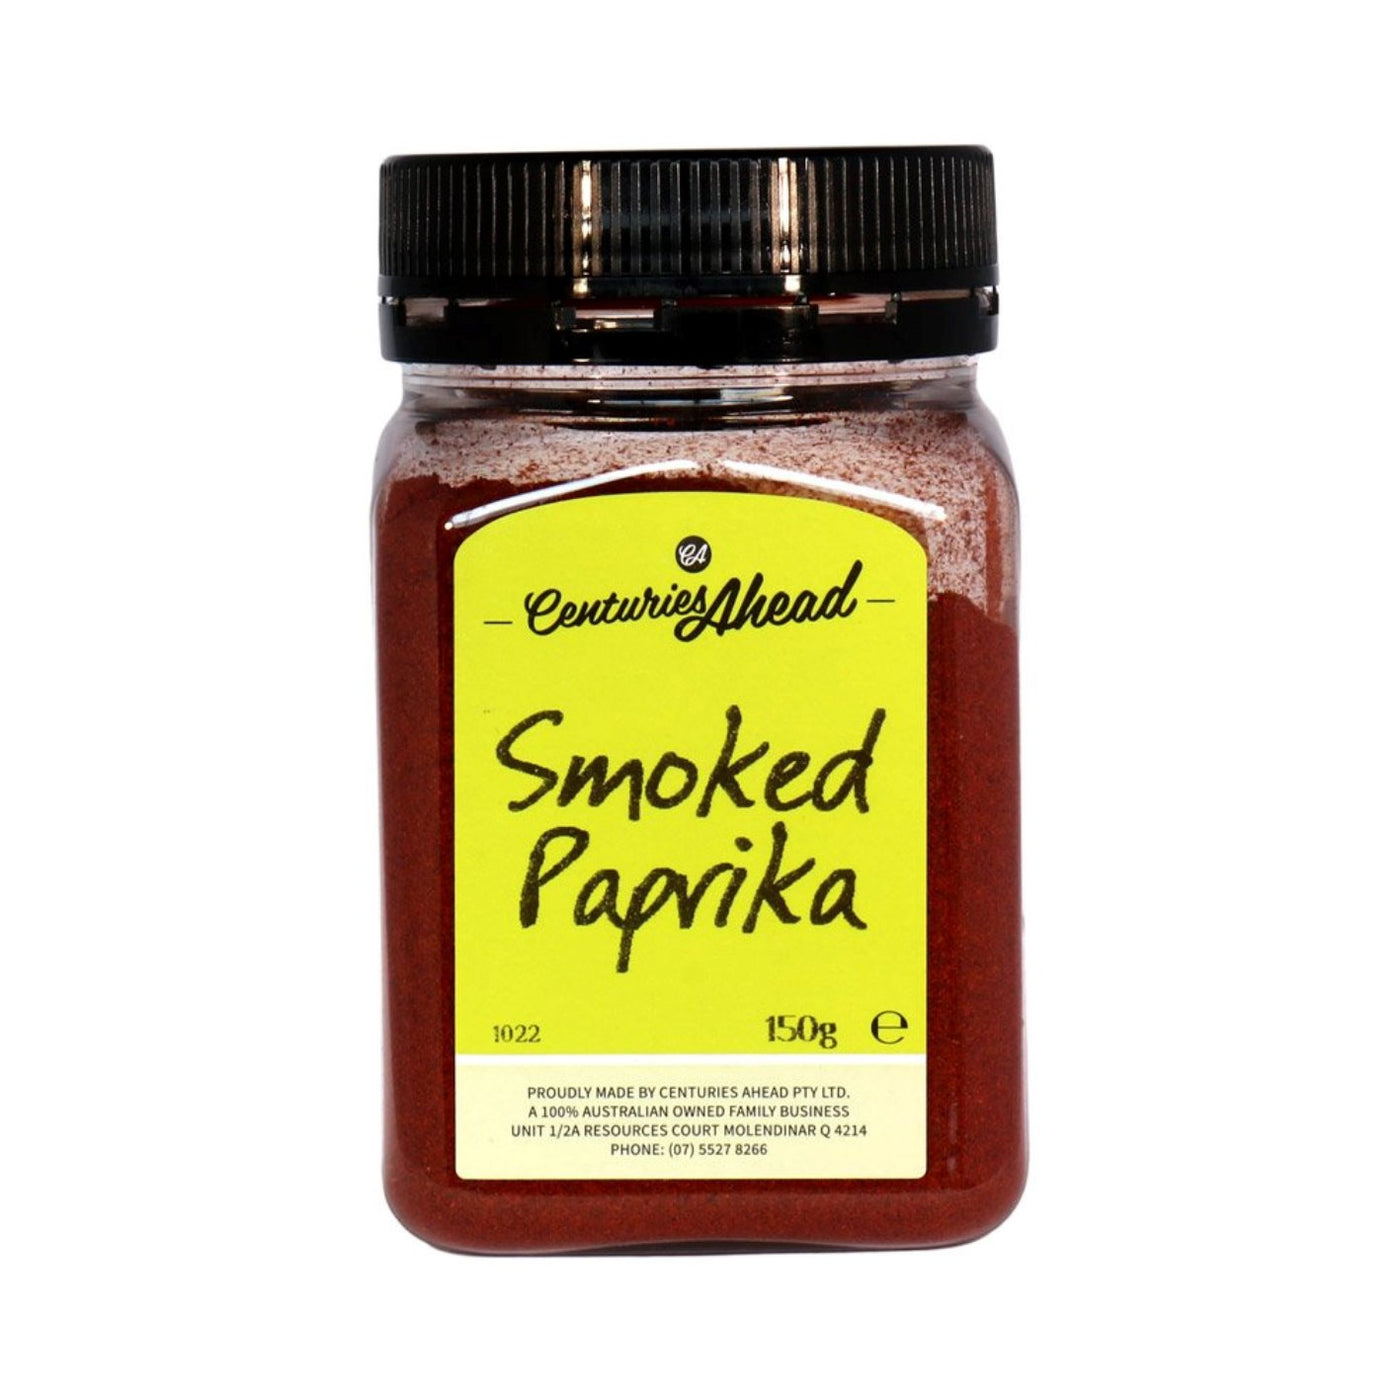 Centuries Ahead Smoked Paprika 150g